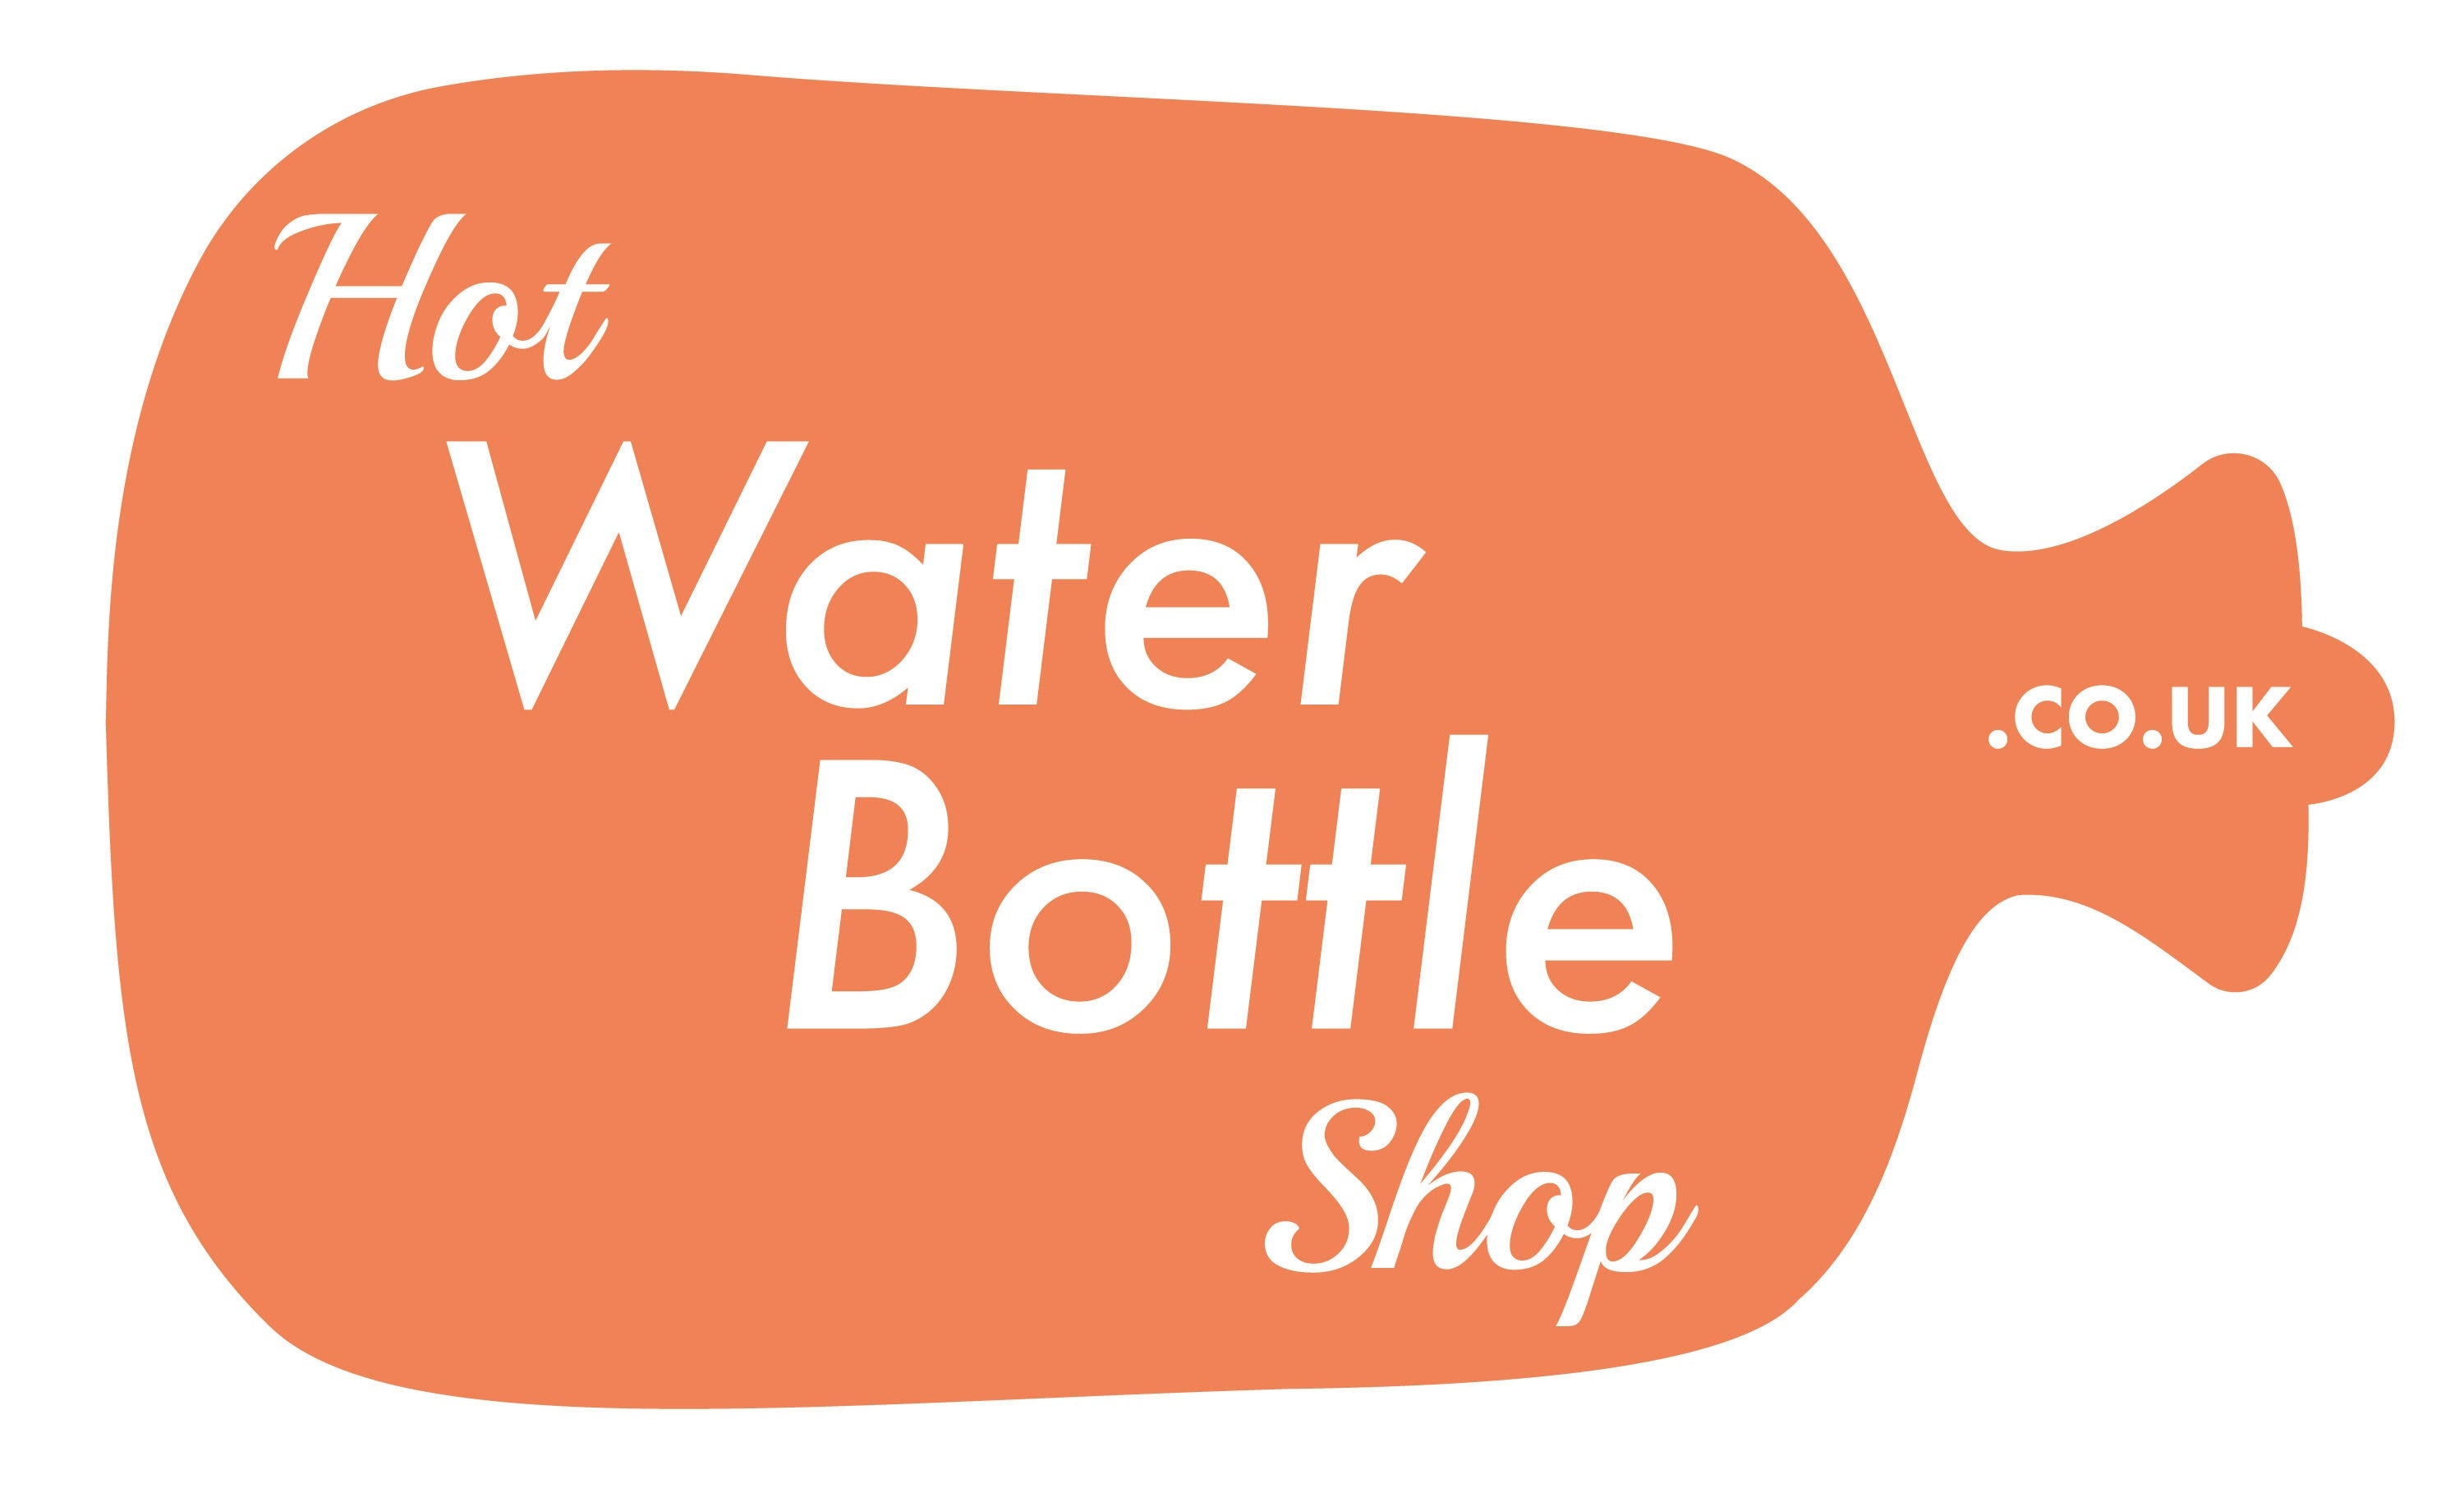 http://www.hotwaterbottleshop.co.uk/cdn/shop/files/Hot_Water_Bottle_Shop_Logo_d5130e5d-ea4e-4ce5-b466-5910a287e5fa.jpg?v=1625596841